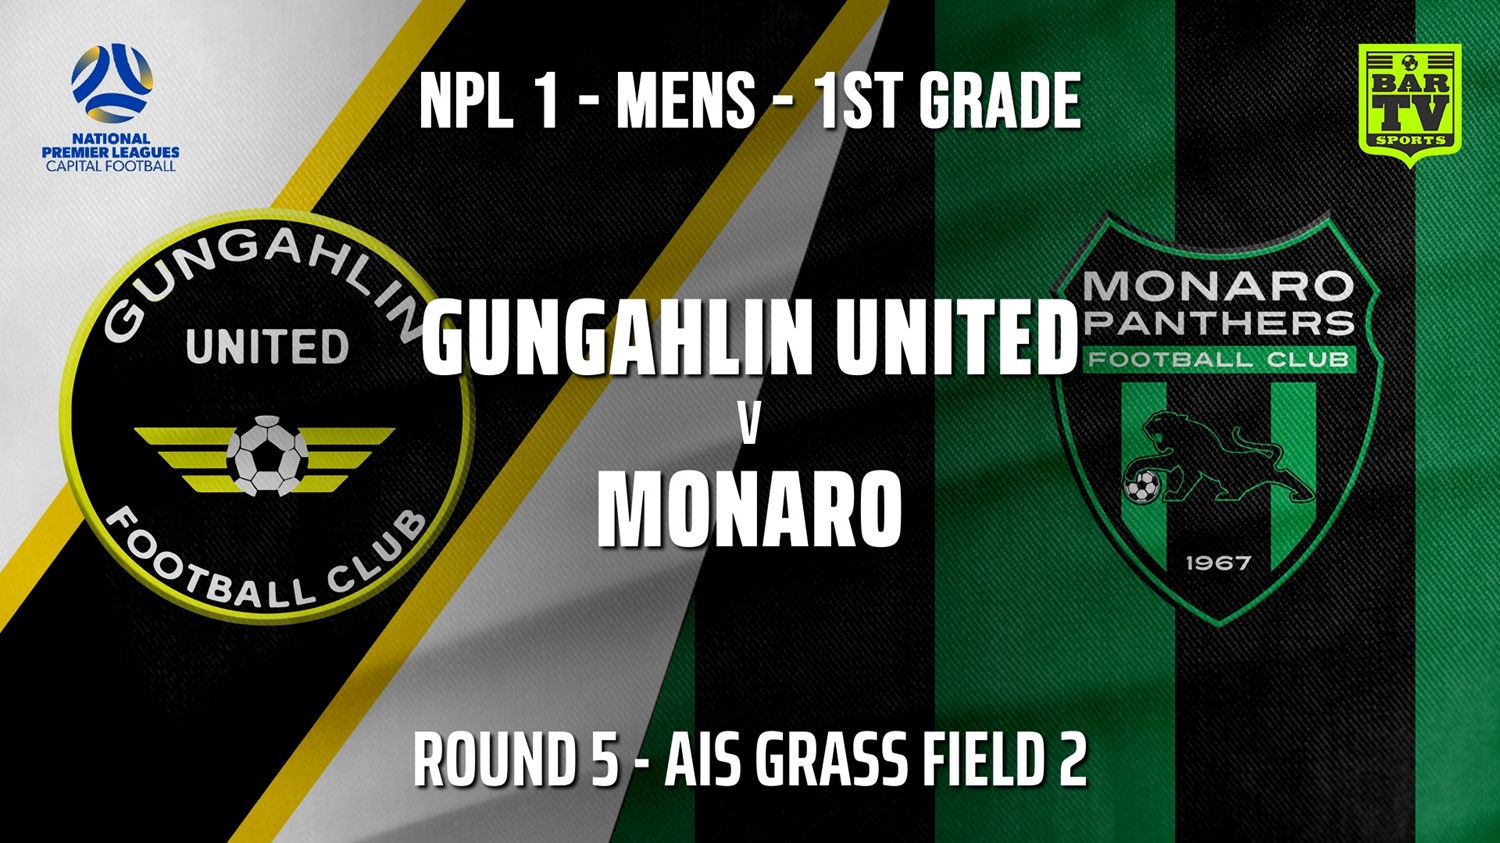 210509-NPL - CAPITAL Round 5 - Gungahlin United FC v Monaro Panthers FC Minigame Slate Image